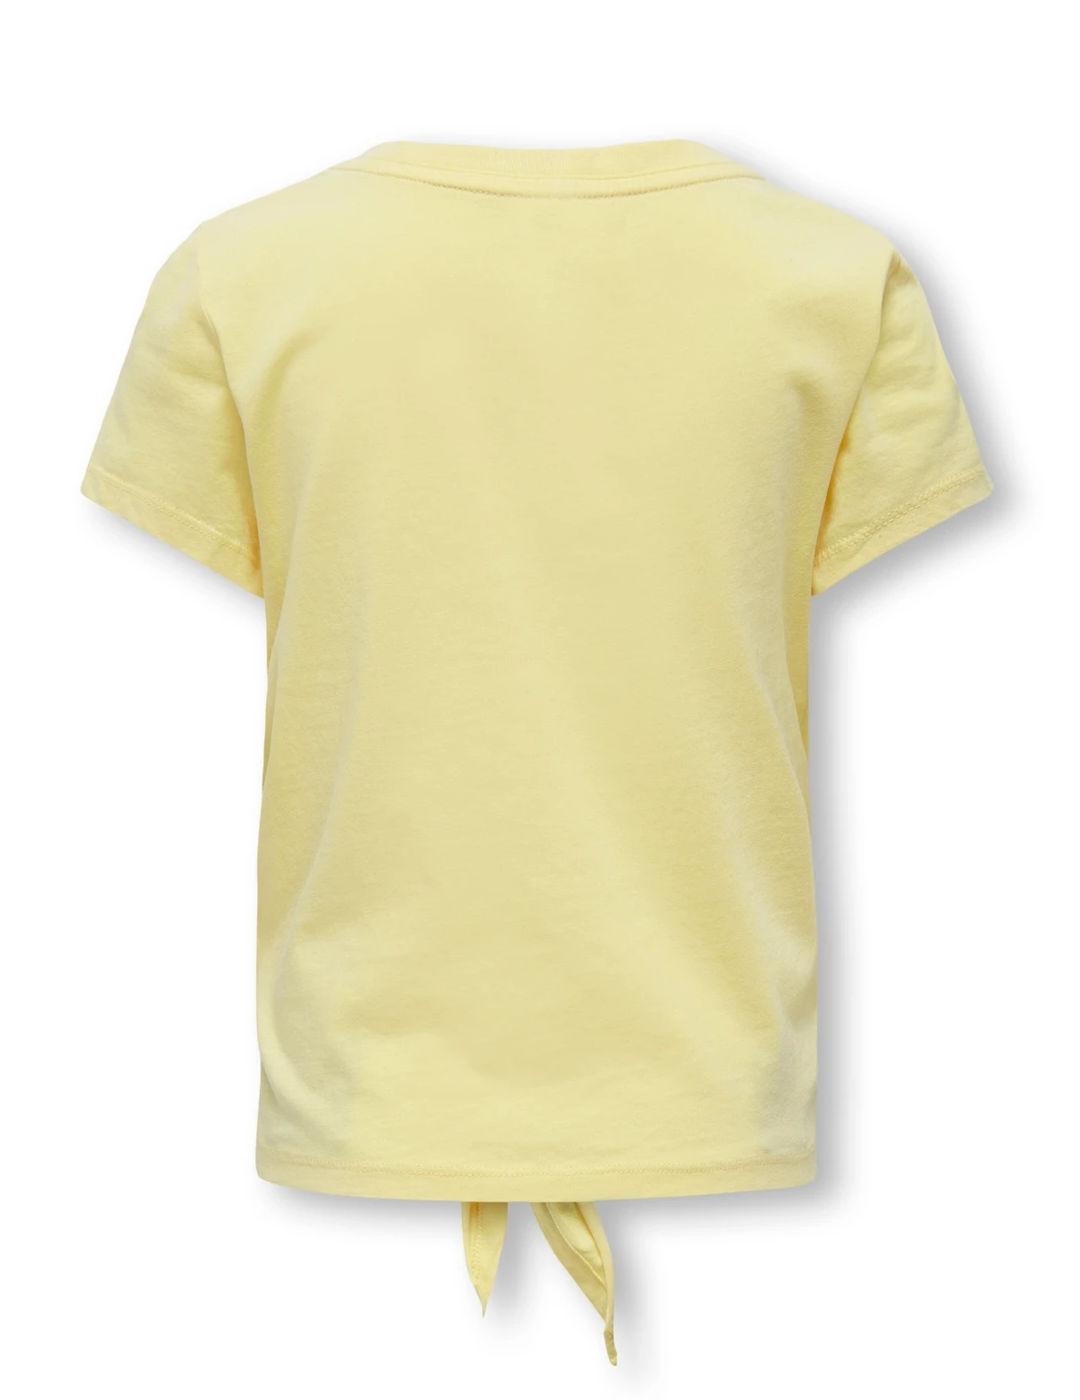 Camiseta Only Kids Glucy amarillo manga corta para niña